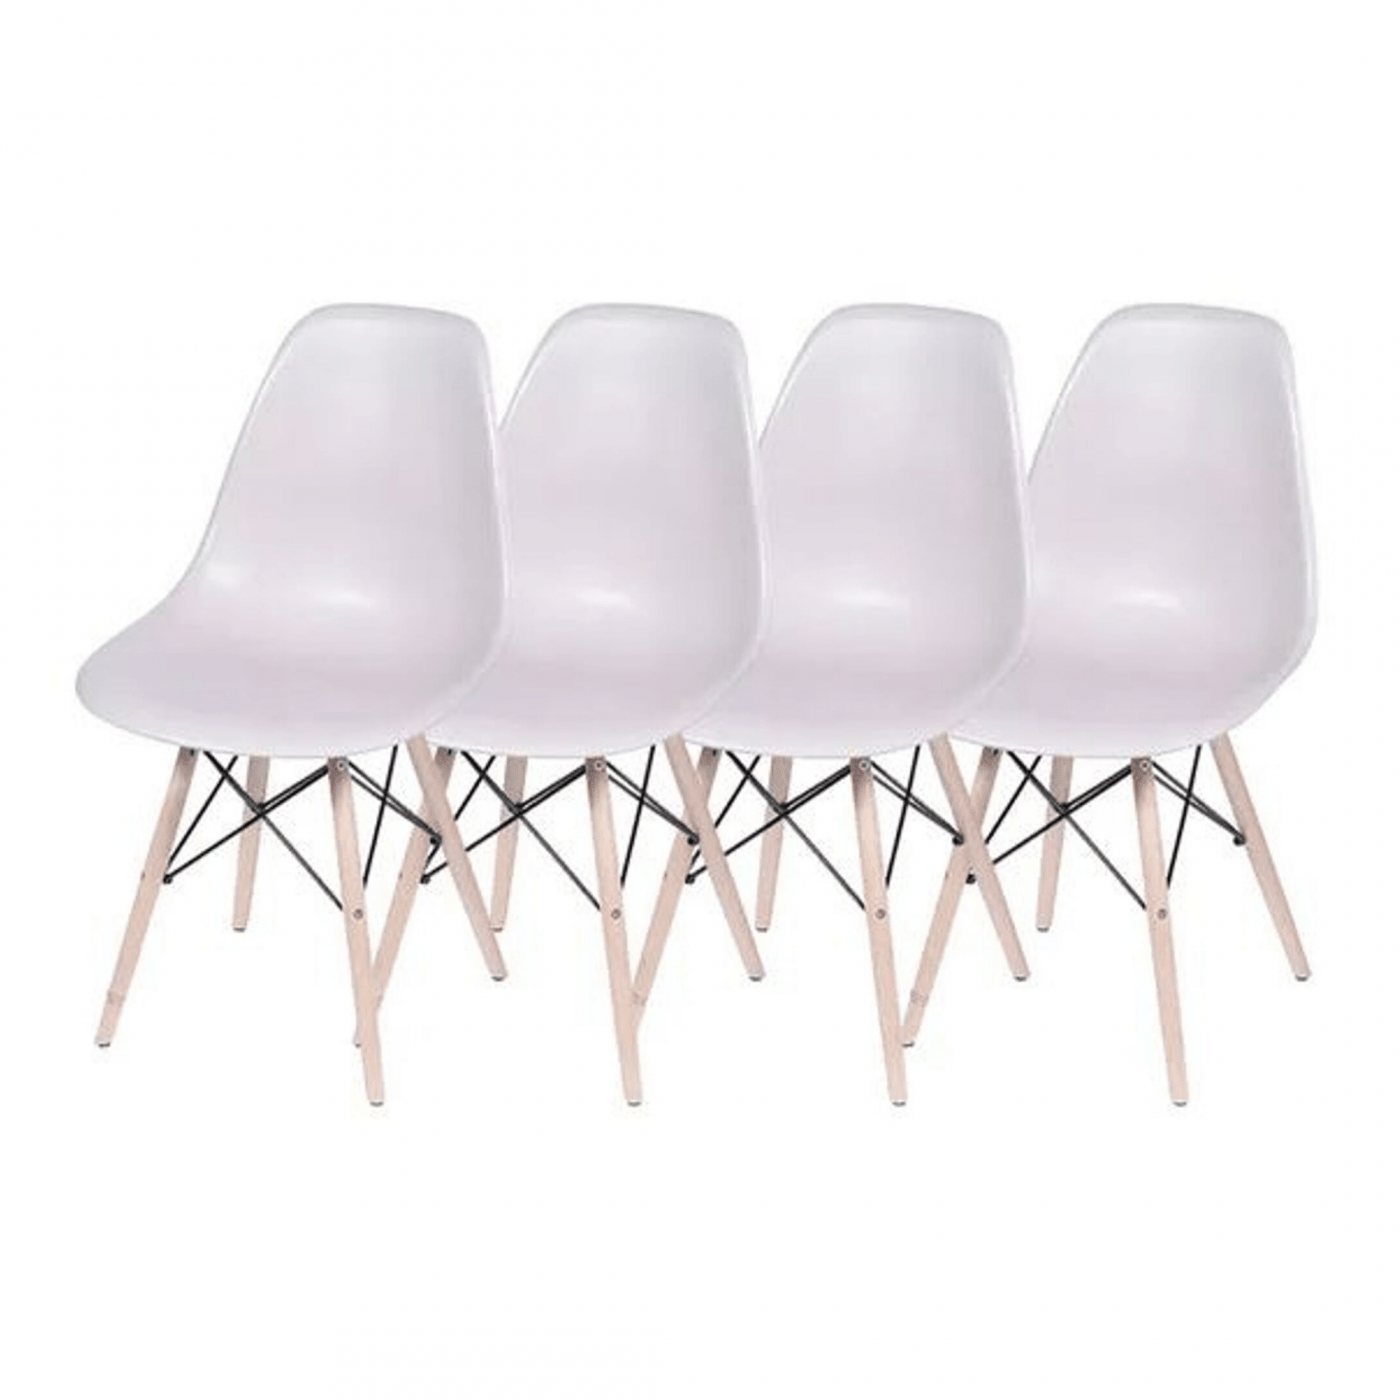 4 Cadeiras Eames Branca